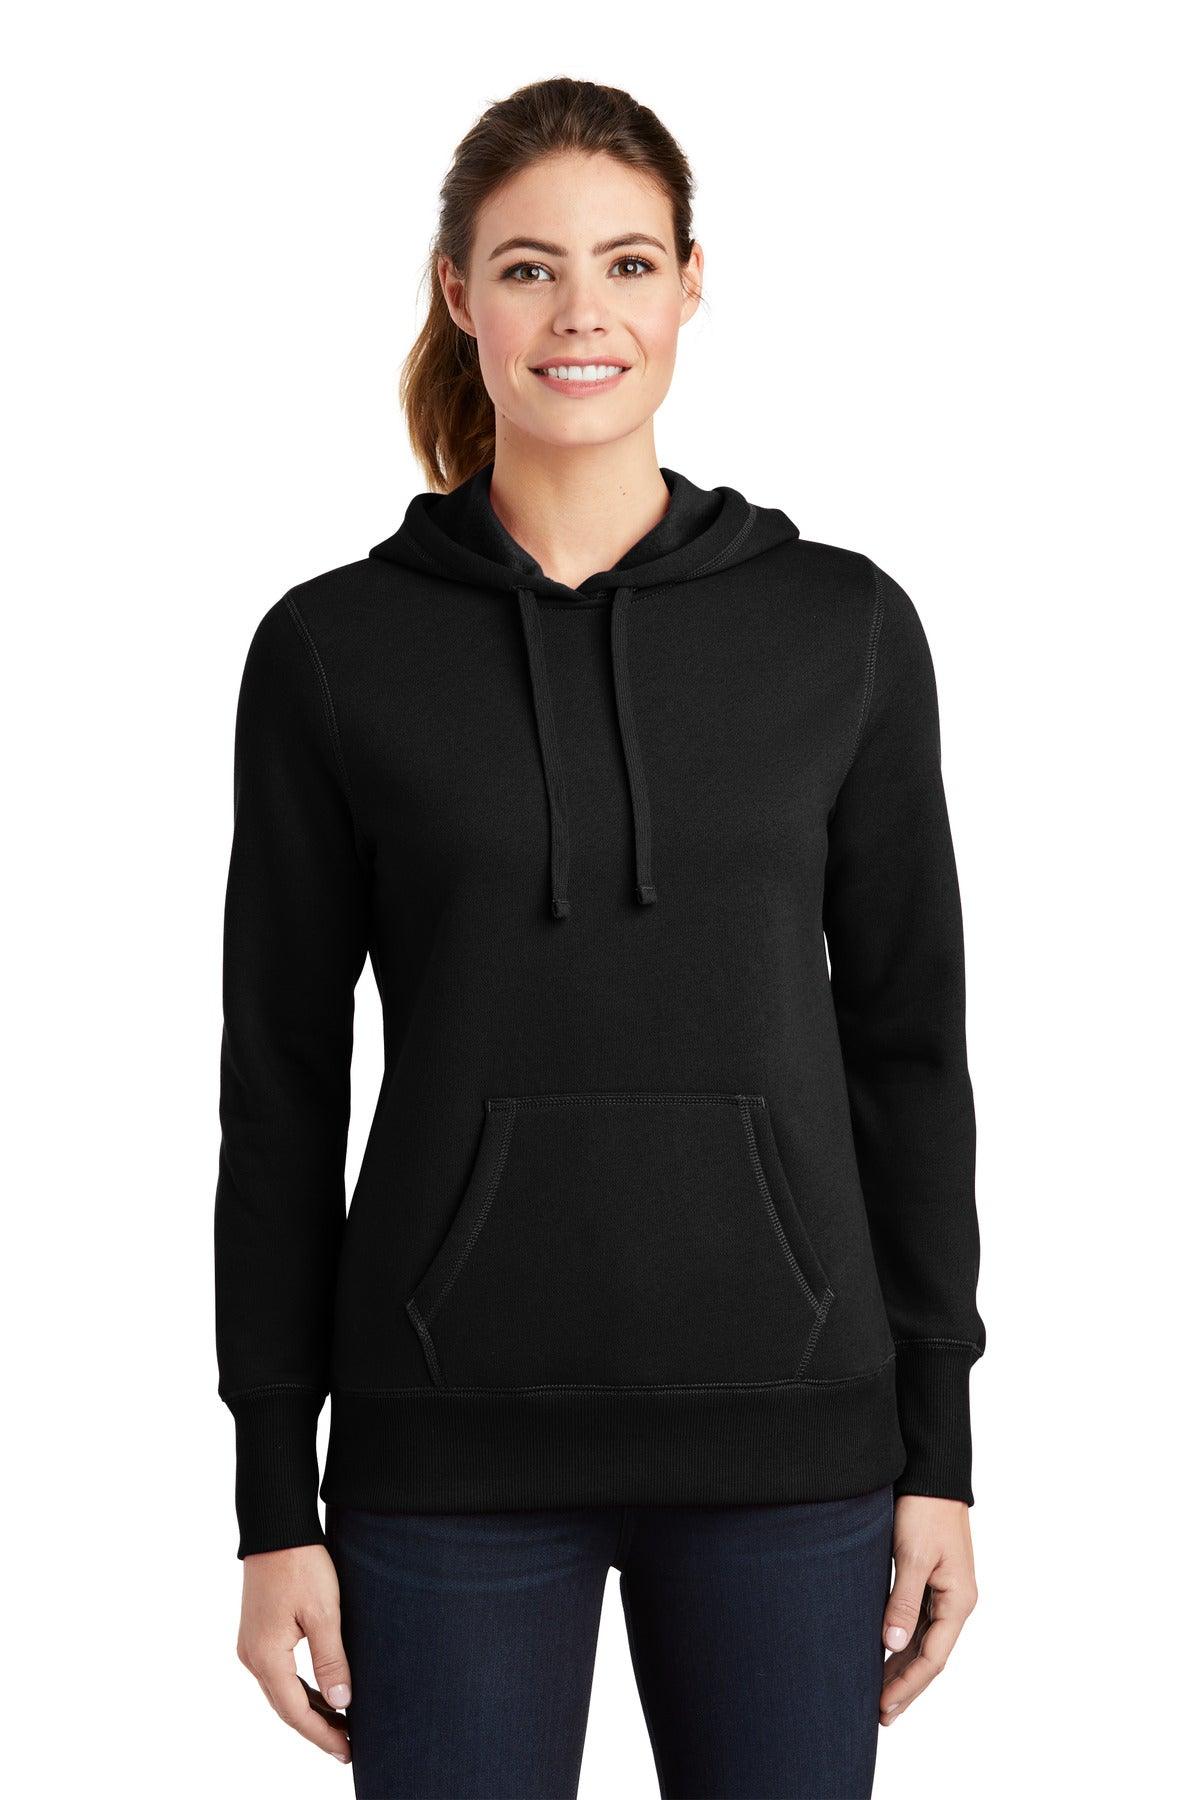 Sport-Tek Ladies Pullover Hooded Sweatshirt. LST254 - Dresses Max